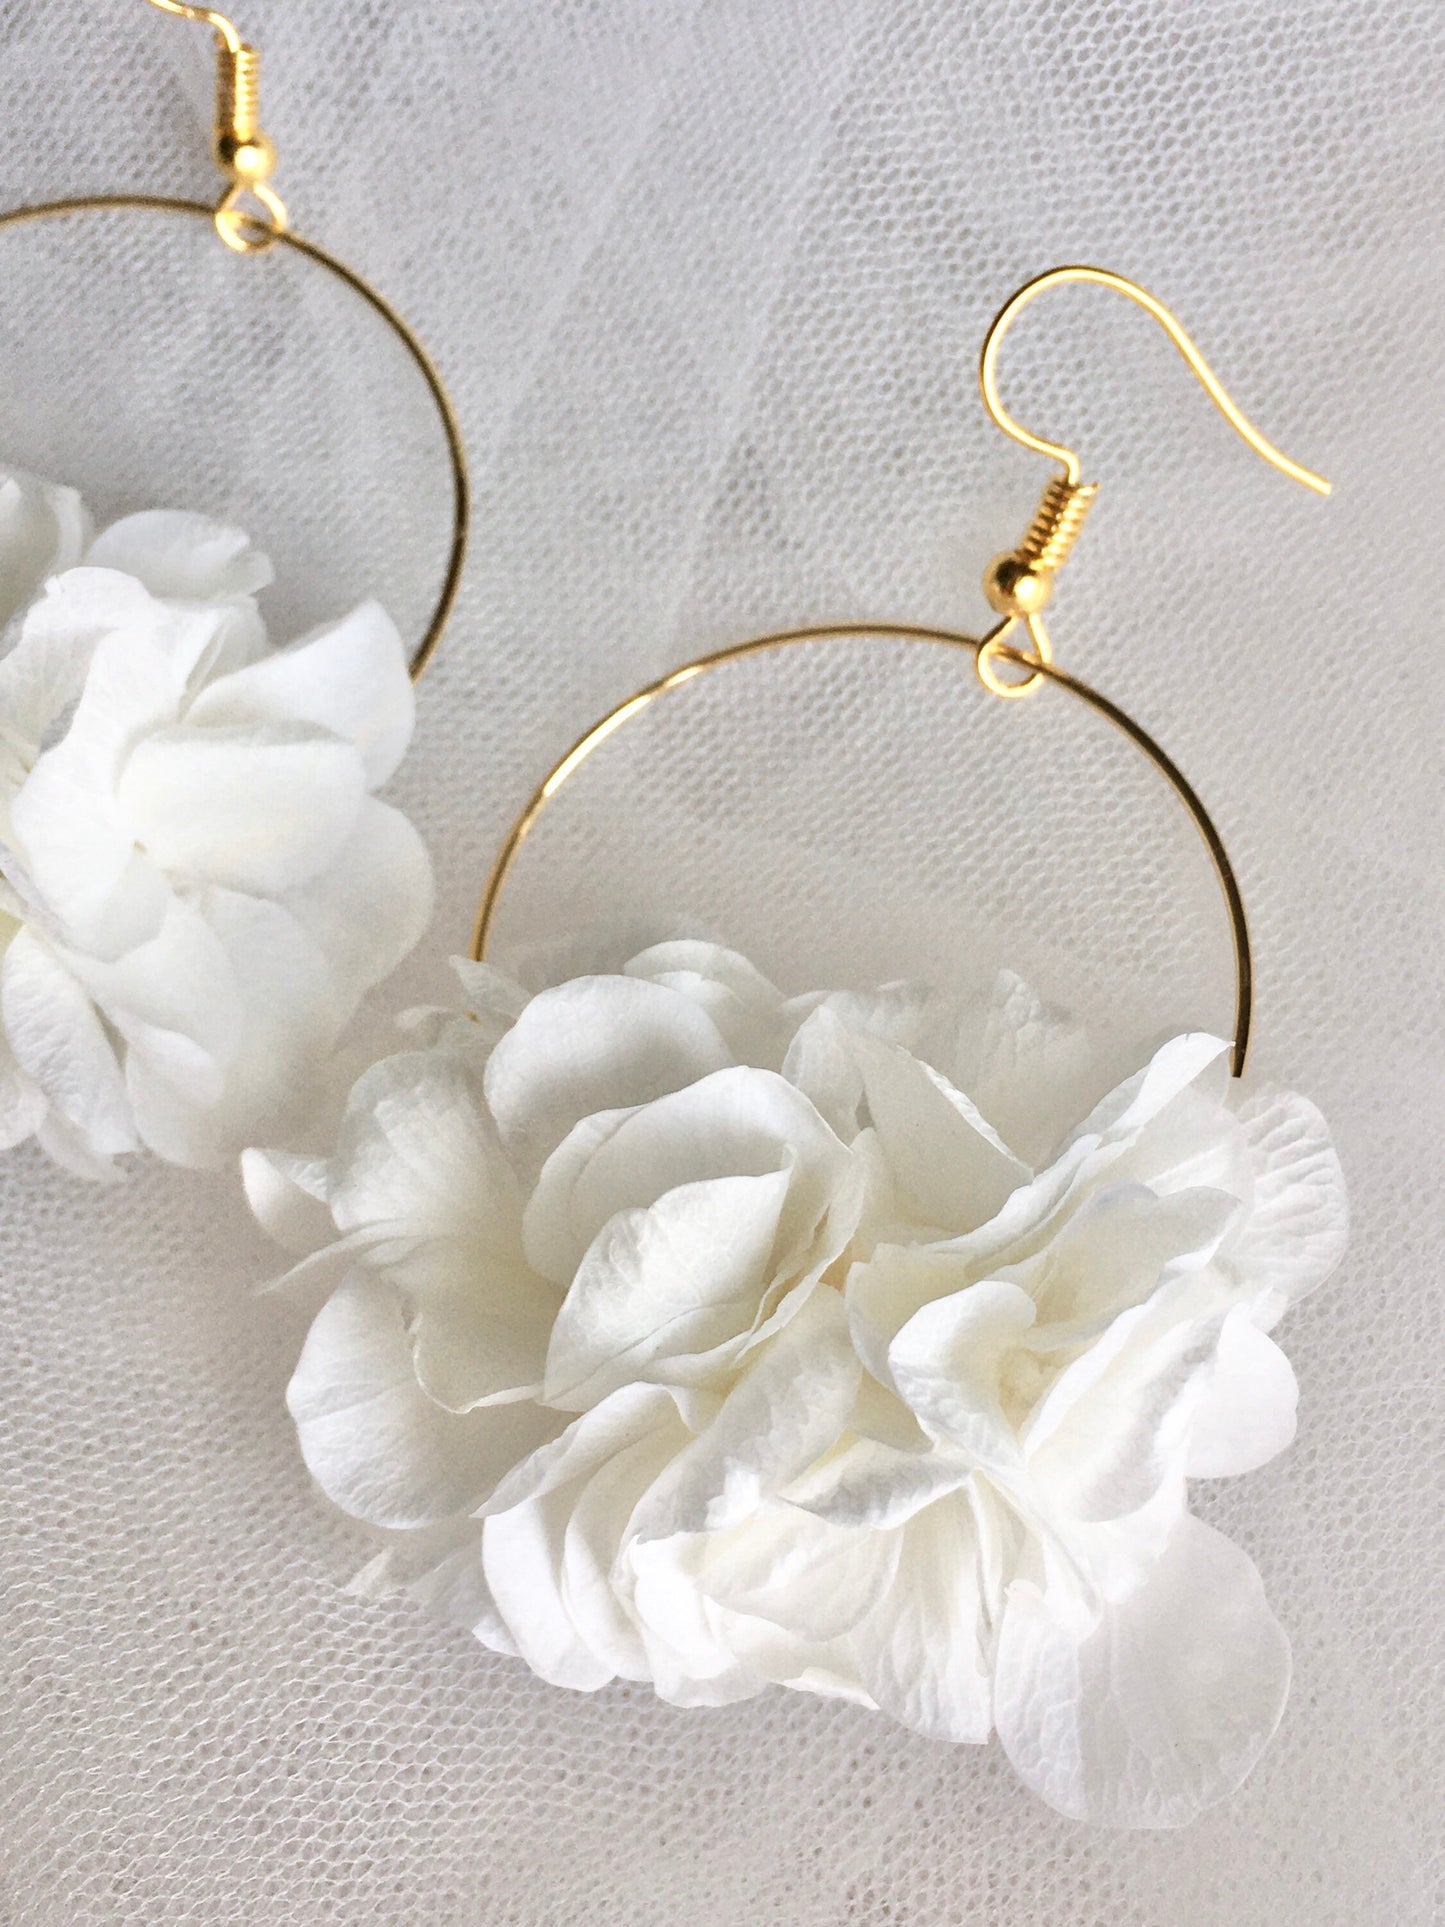 14crt gold plated Bohemian Bridal Flower Earrings, Bridal jewelry UK, White Hydrangea Earrings, Boho Wedding Flowers, Gold Plated Minimal Jewelry